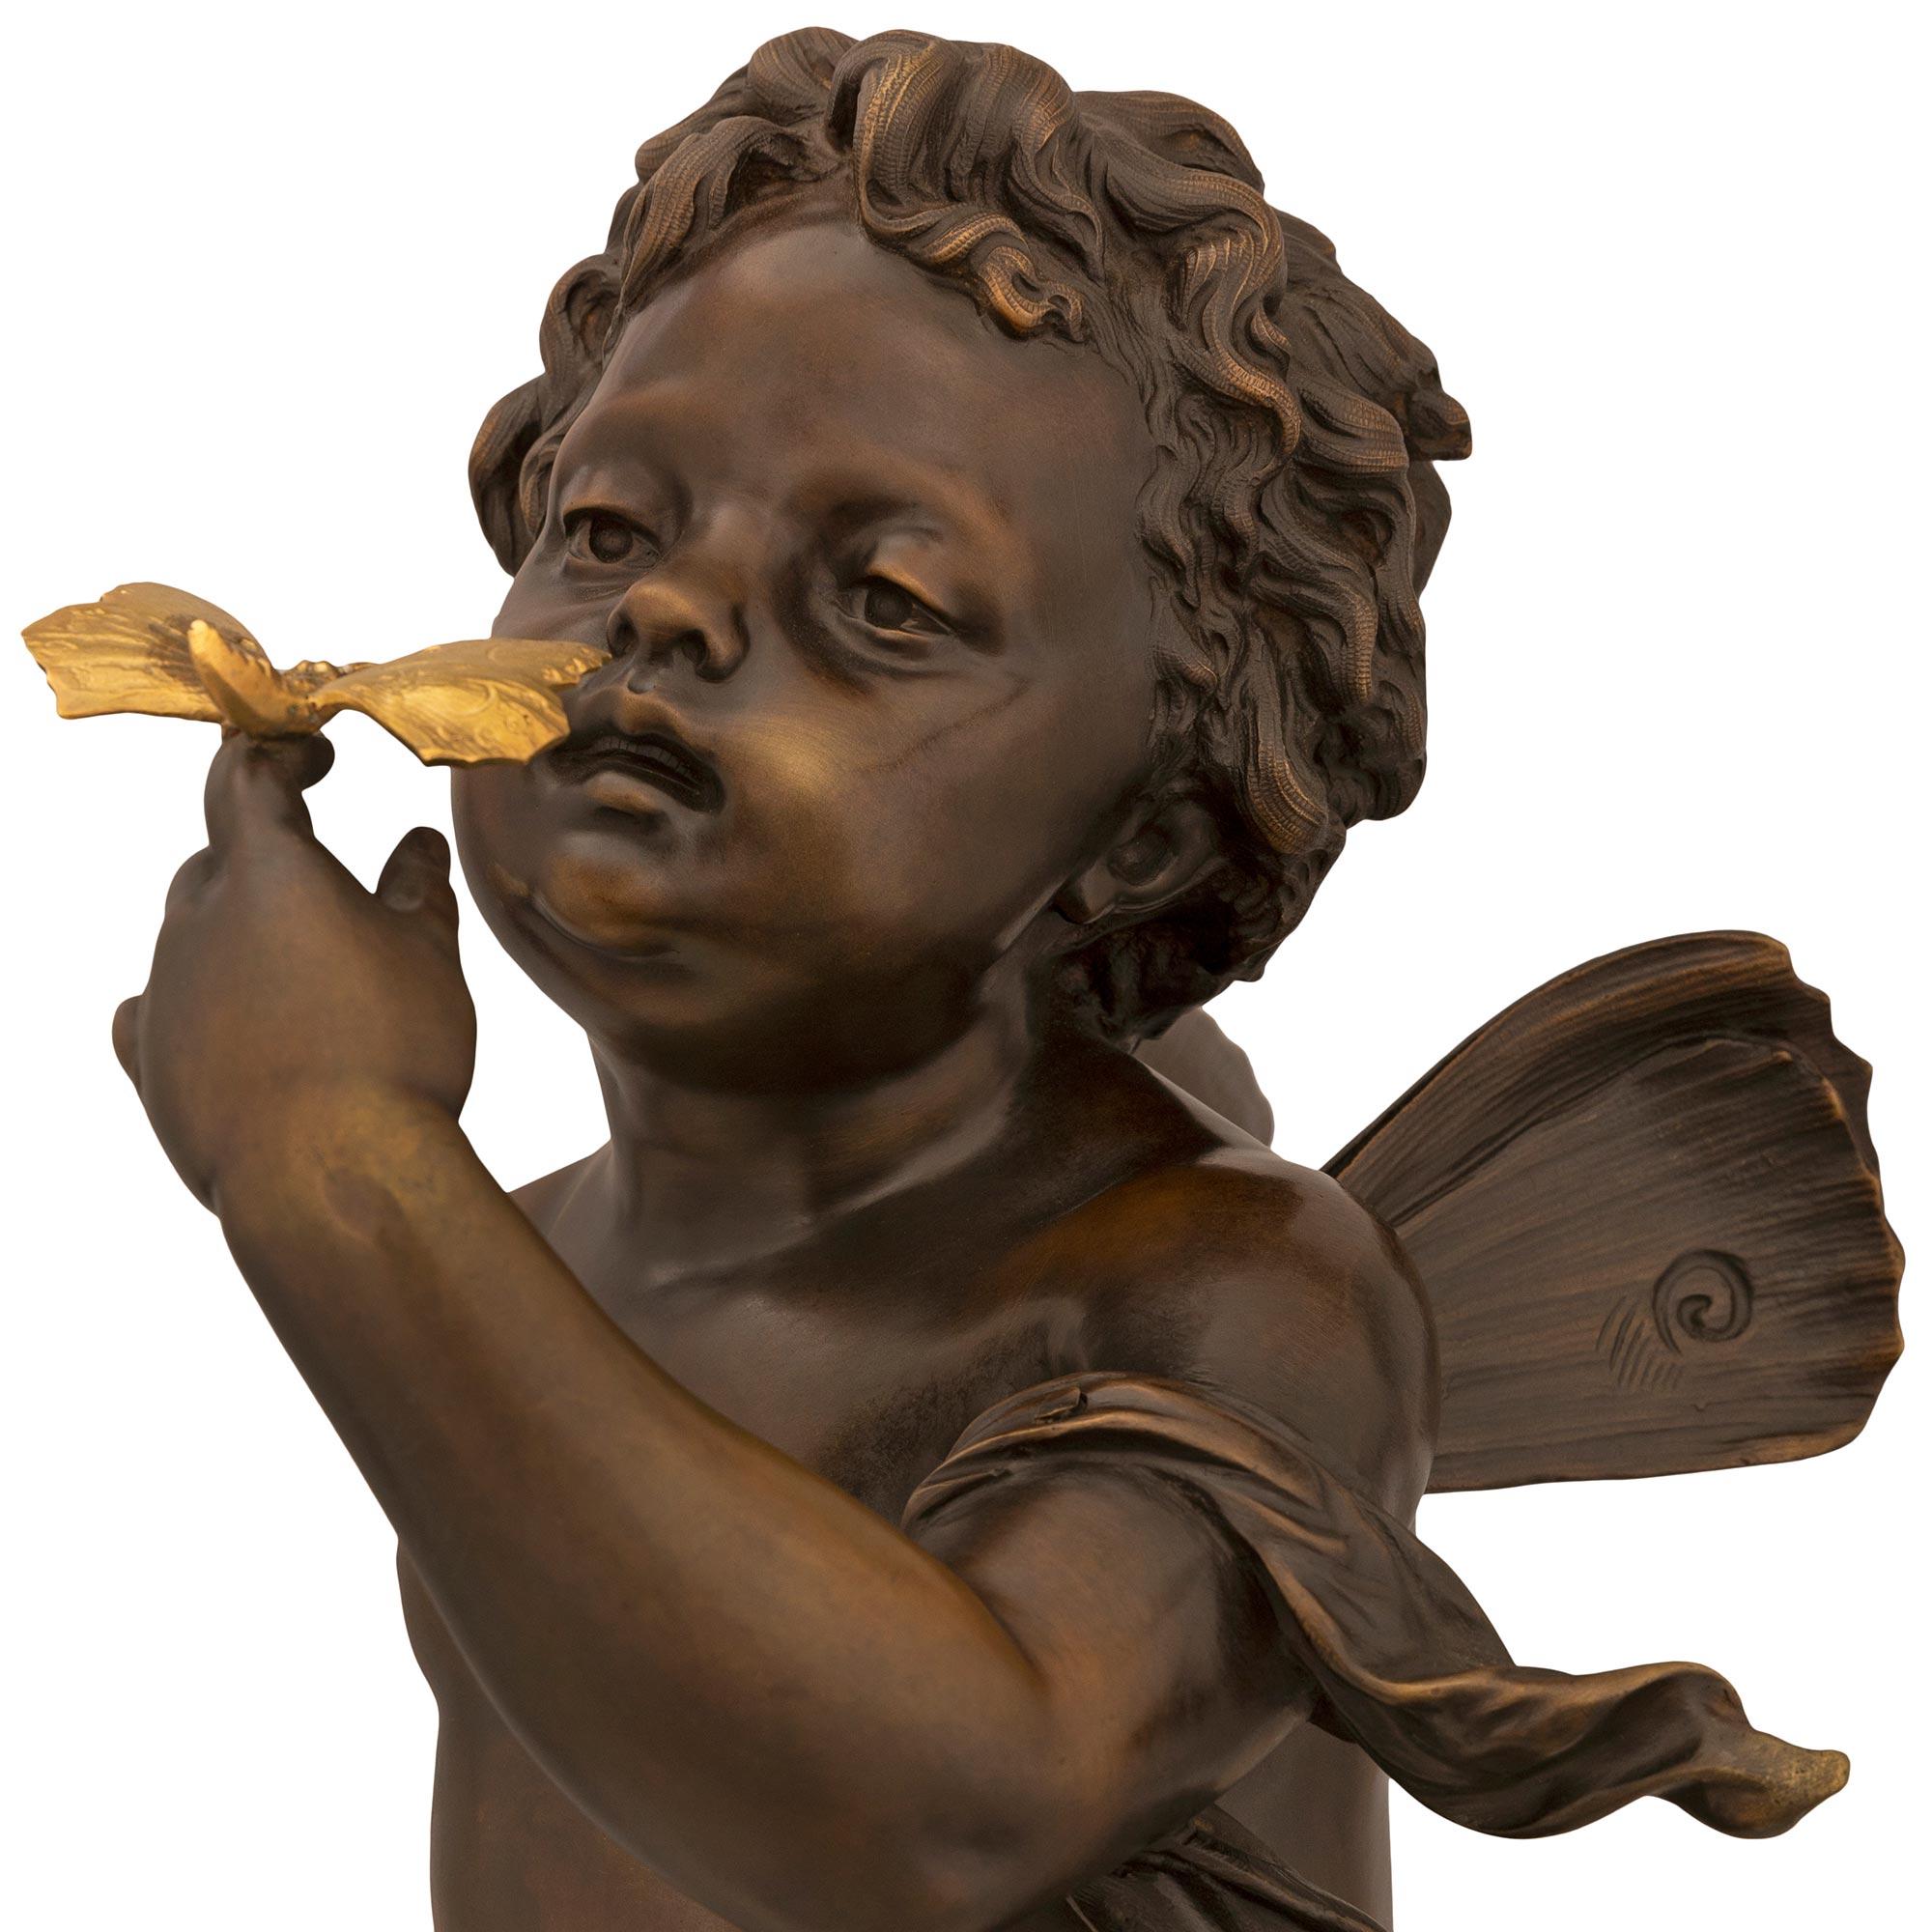 Charmante statue française du 19ème siècle en bronze patiné et bronze doré de très grande qualité, attribuée à Fervill Suan. La statue est surélevée par une base octogonale en bronze avec une bande décorative en perles d'ormolu et gravée des mots